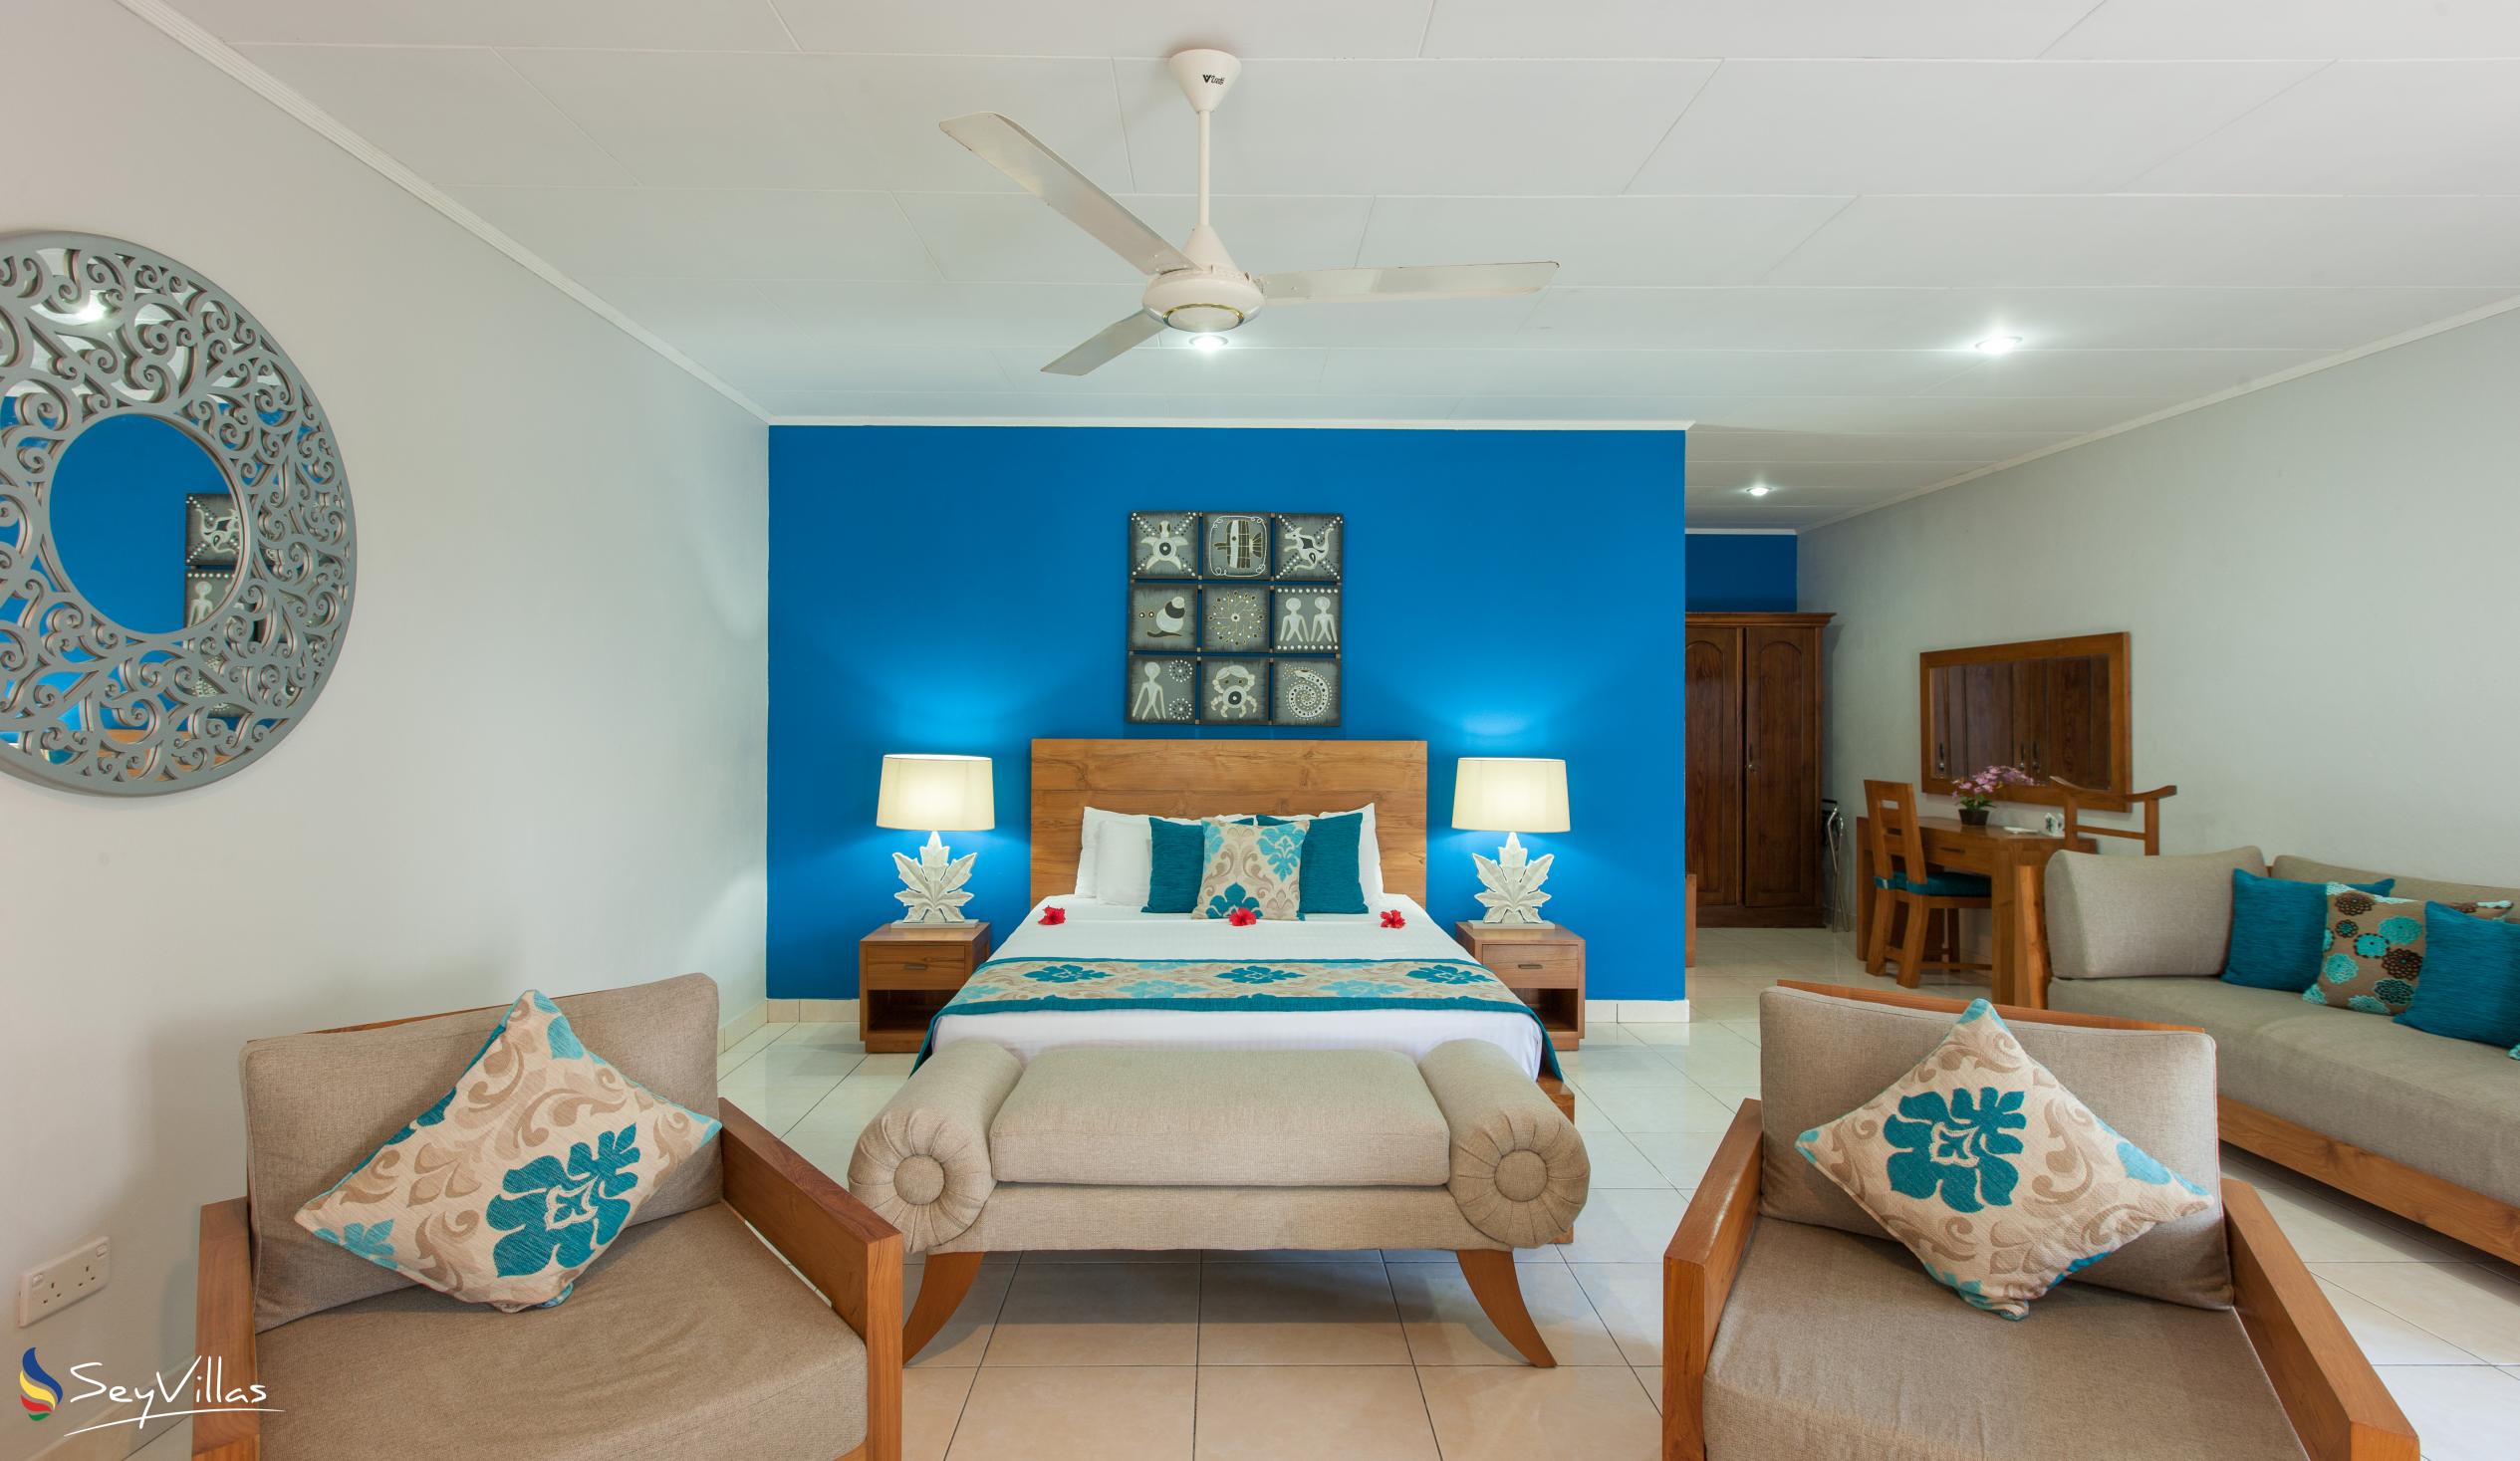 Foto 41: Villas de Mer - Suite Junior - Praslin (Seychelles)